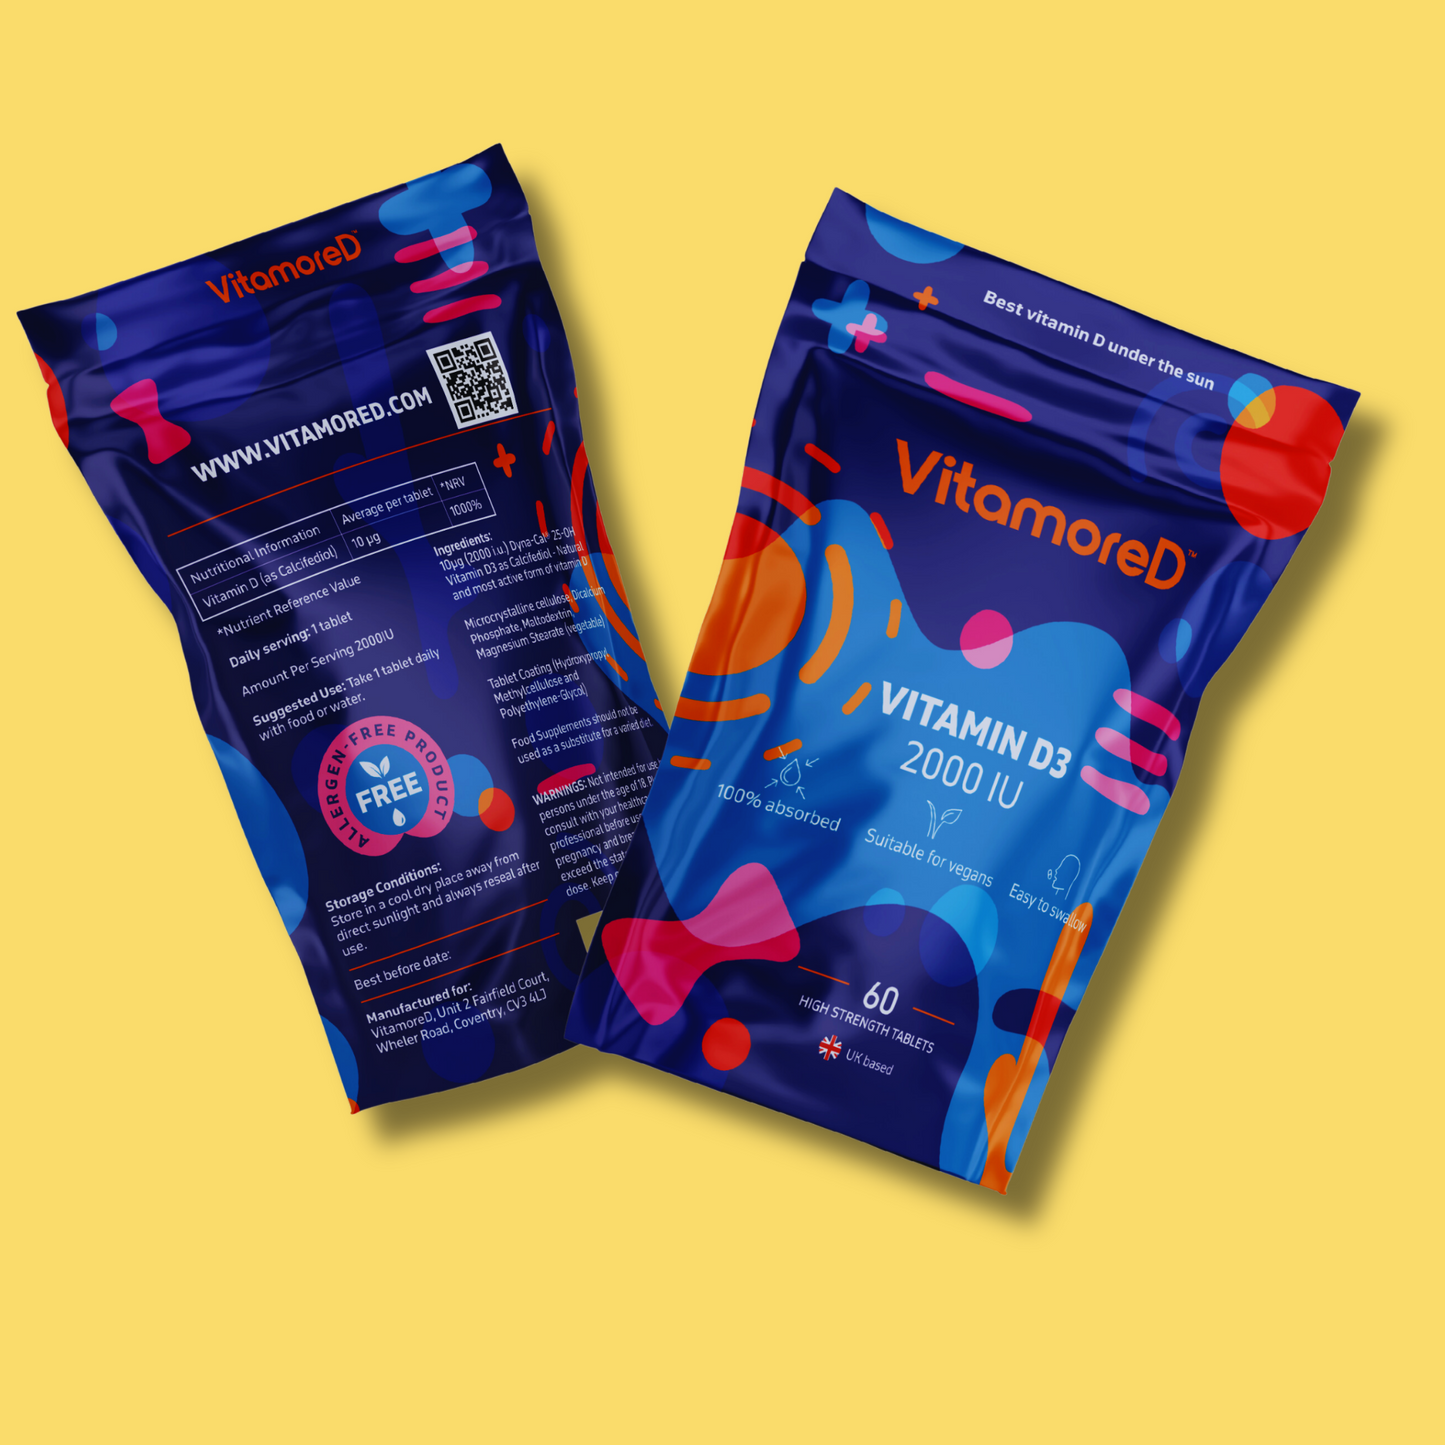 VitamoreD | Vegan D3 | Vitamin D as Calcifediol